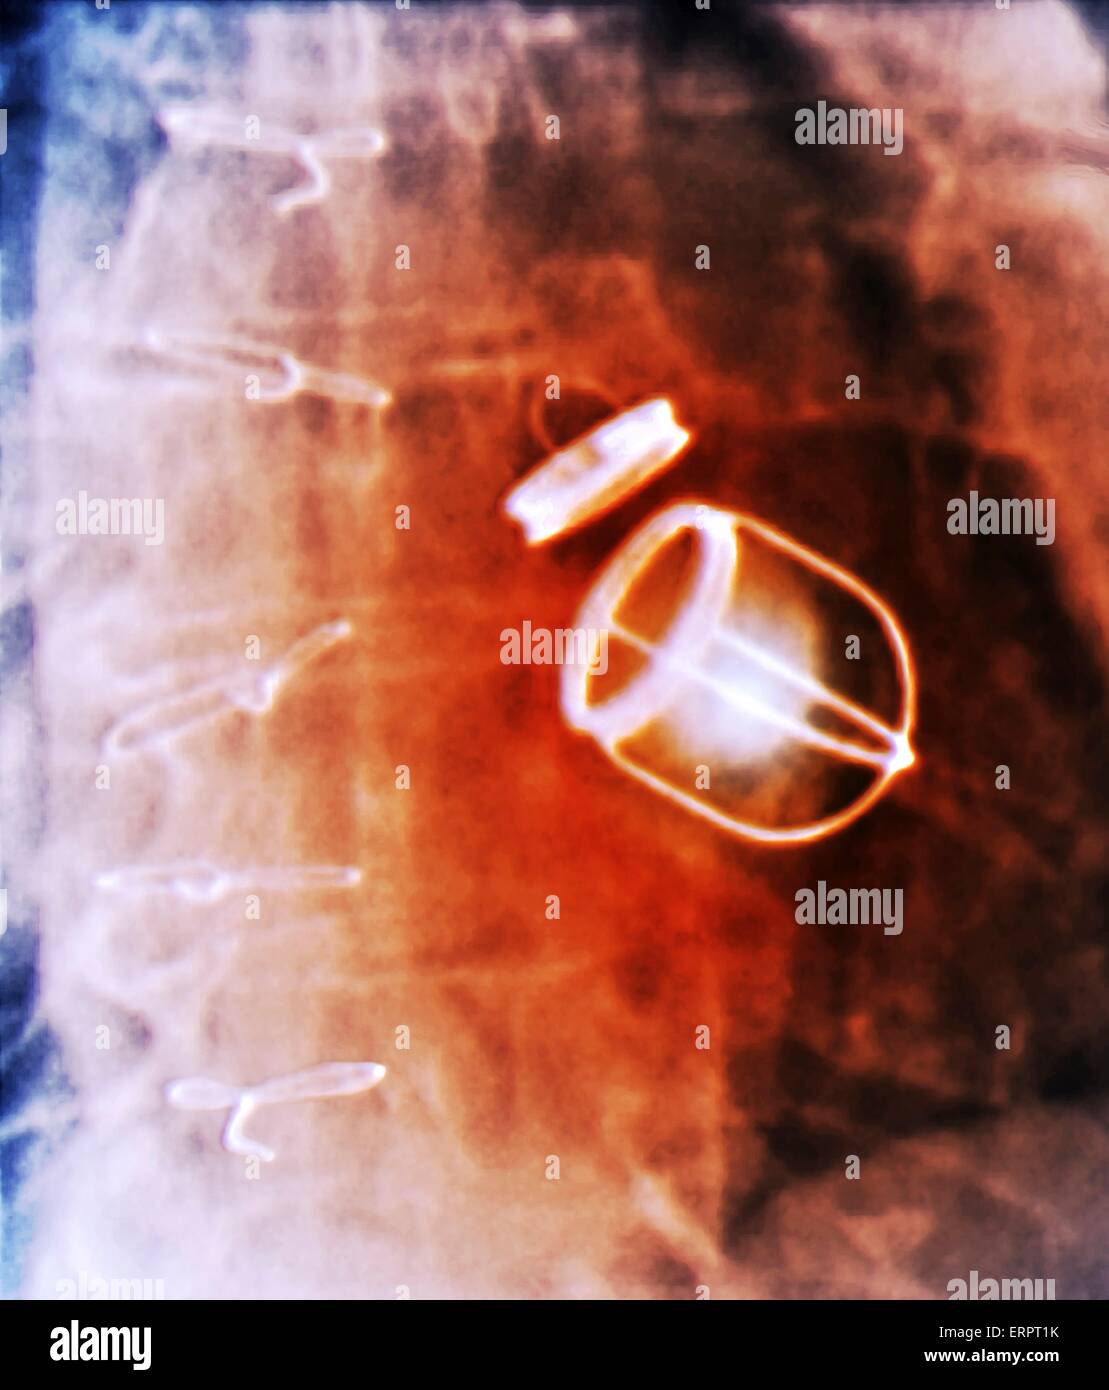 Valves cardiaques artificielles. X-ray de couleur de la poitrine d'un patient de 59 ans avec une insuffisance cardiaque qui a eu à la fois la valve mitrale et aortique de leur coeur remplacés par des valves cardiaques artificielles. Banque D'Images